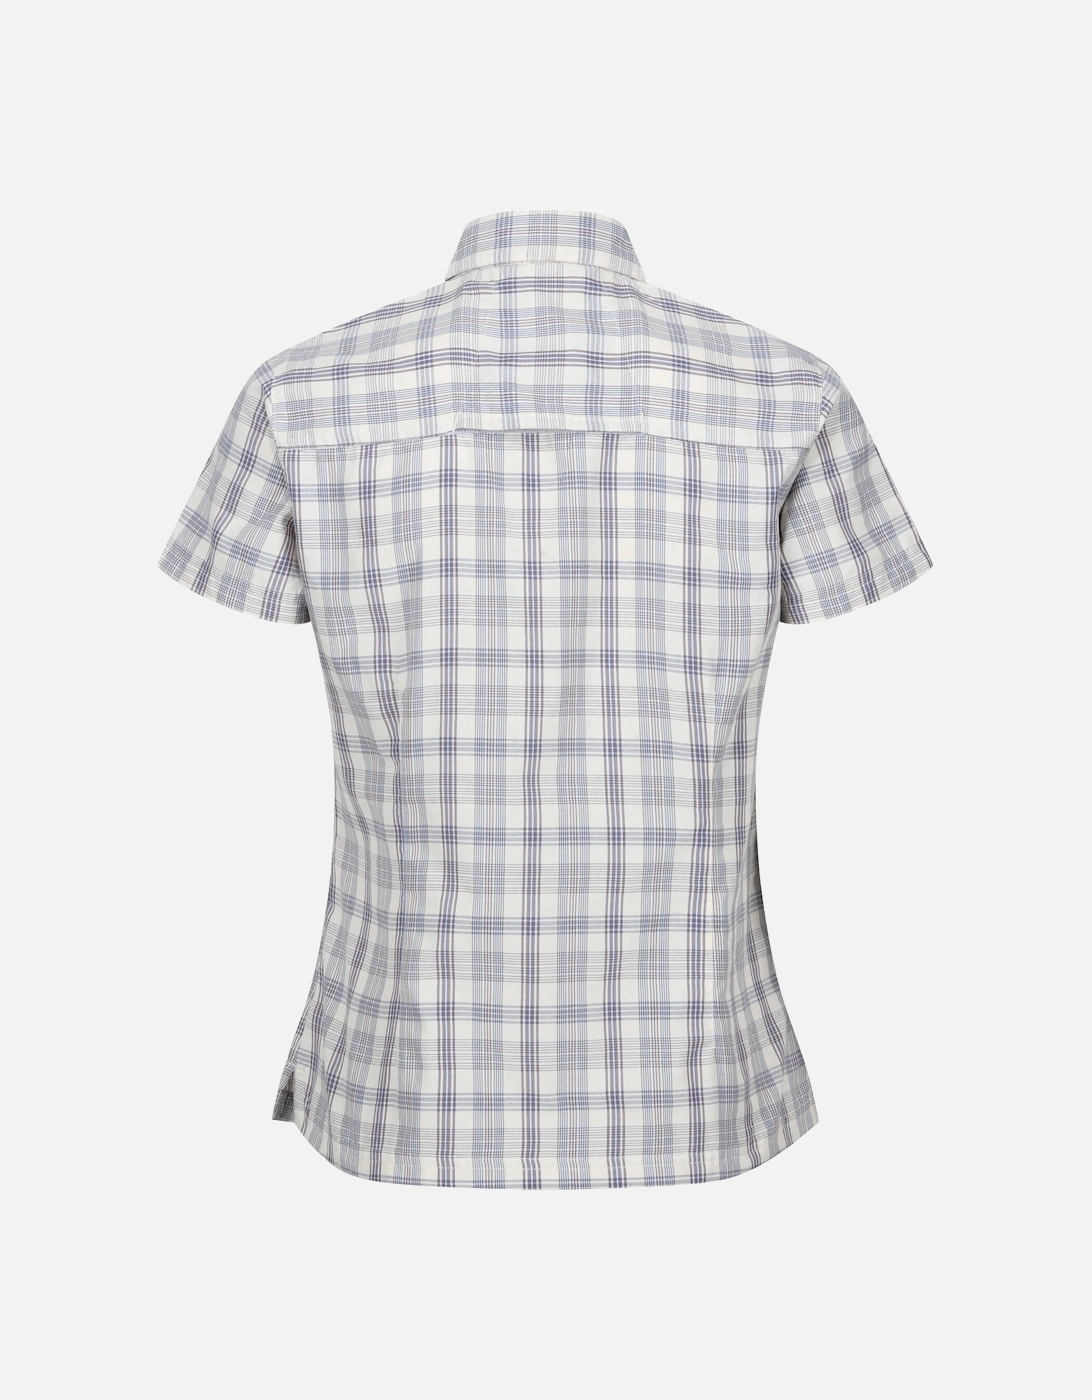 Womens/Ladies Mindano VIII Checked Short-Sleeved Shirt